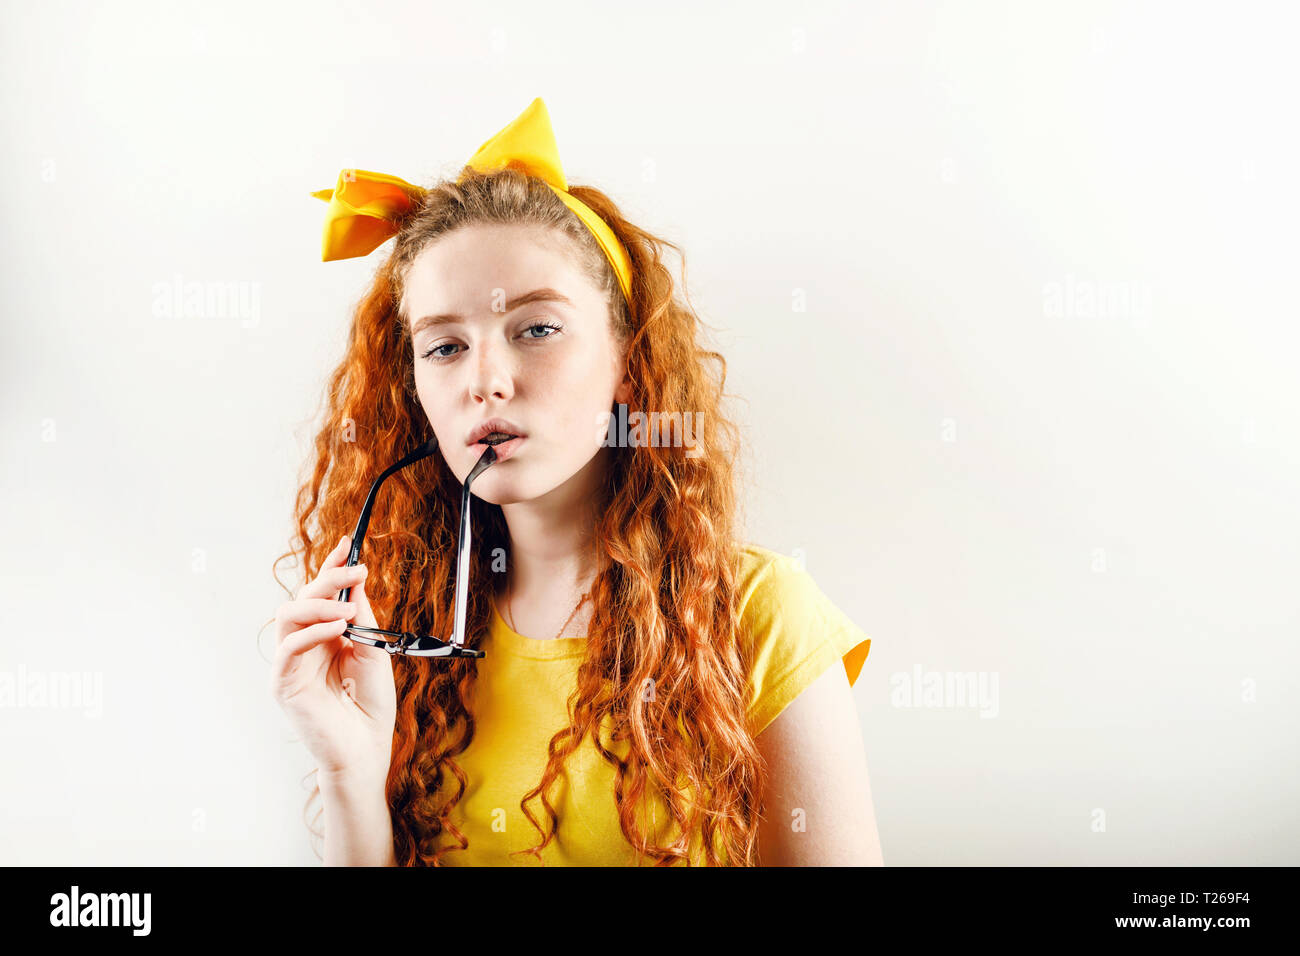 Pensive curly redhead girl avec un arc jaune sur sa tête portant des T-shirt jaune holding eyeglasses près de sa bouche et à la recherche de l'appareil photo Banque D'Images